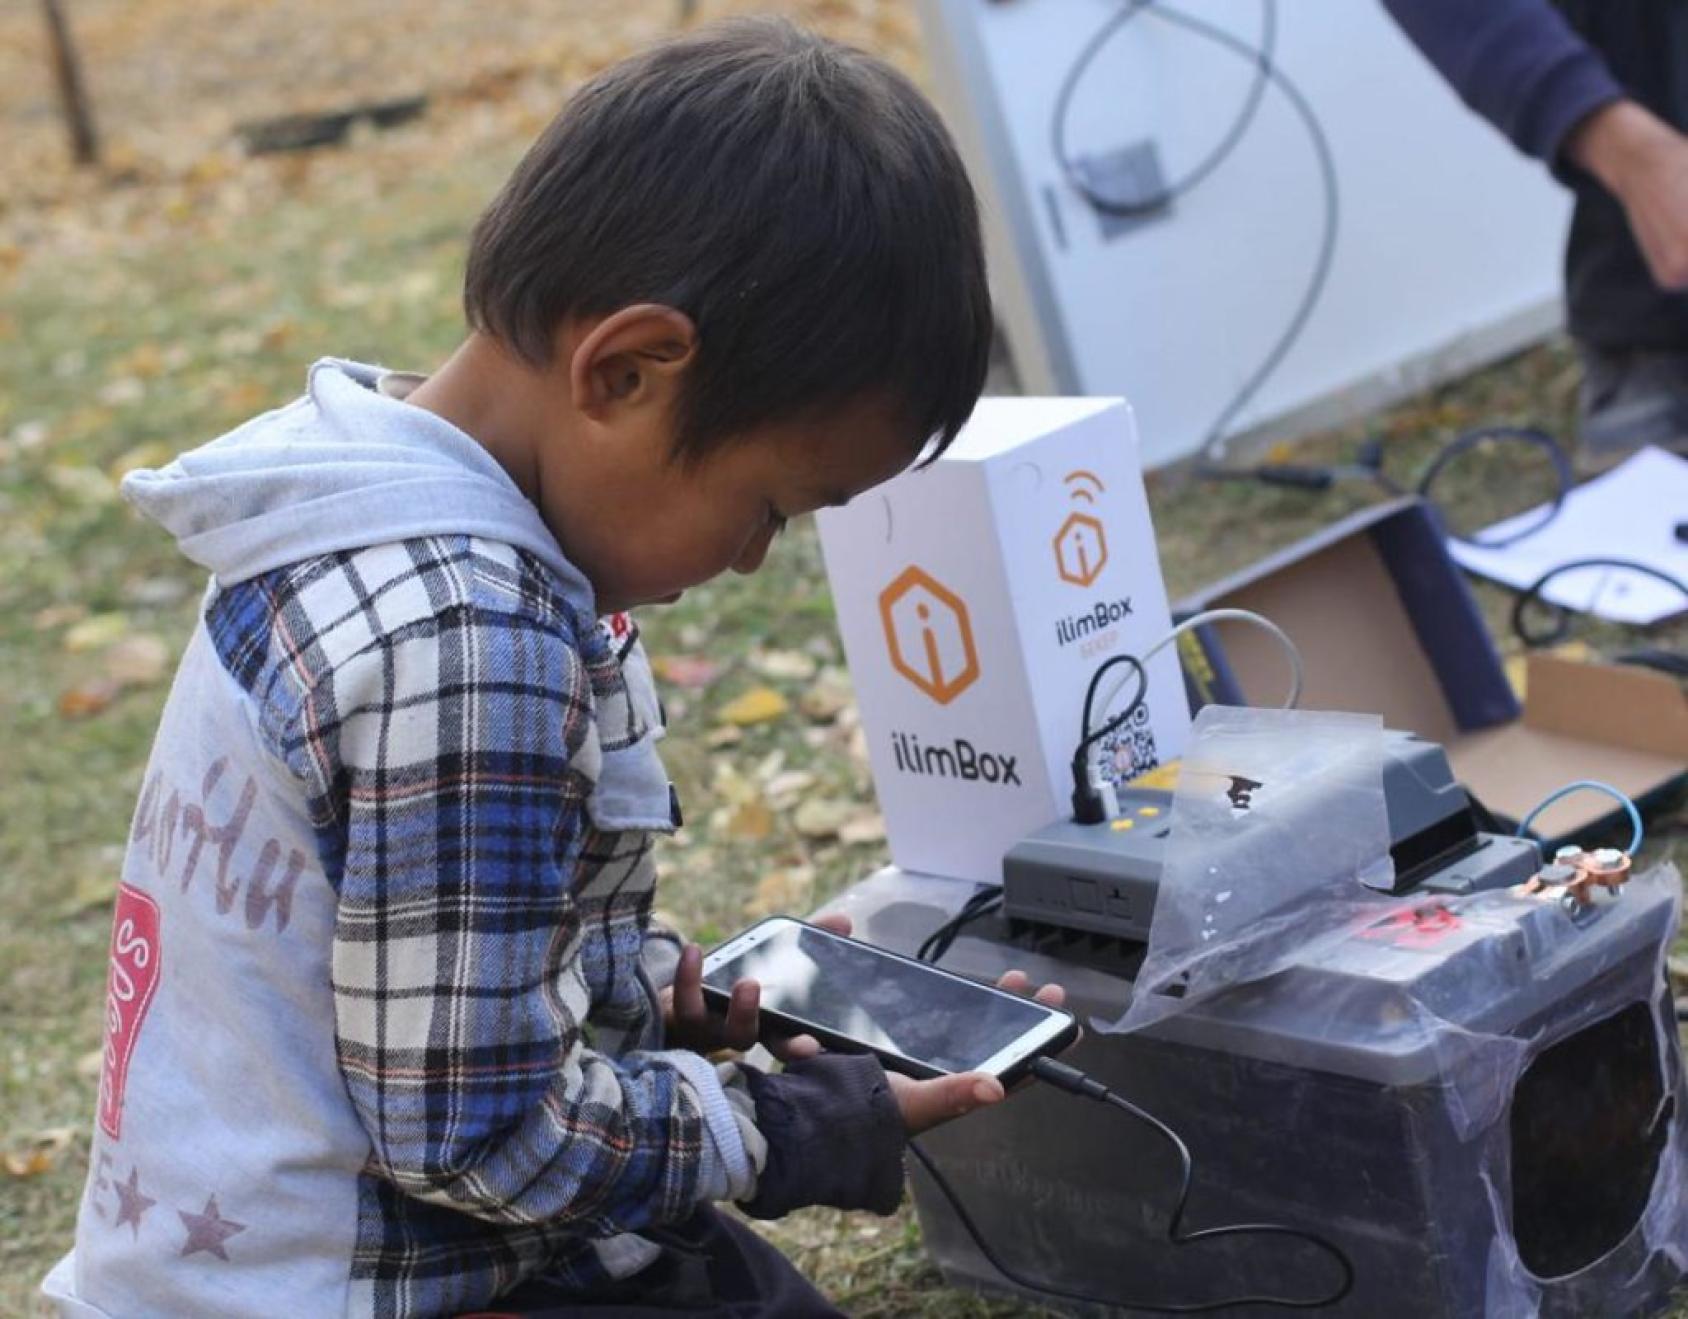 Au Kirghizistan, un petit garçon lit l'écran d'un téléphone portable connecté via un câble au dispositif "Internet in a Box" (en français : "Internet dans une Boxe"), qui permet de stocker des contenus dans une bibliothèque numérique.